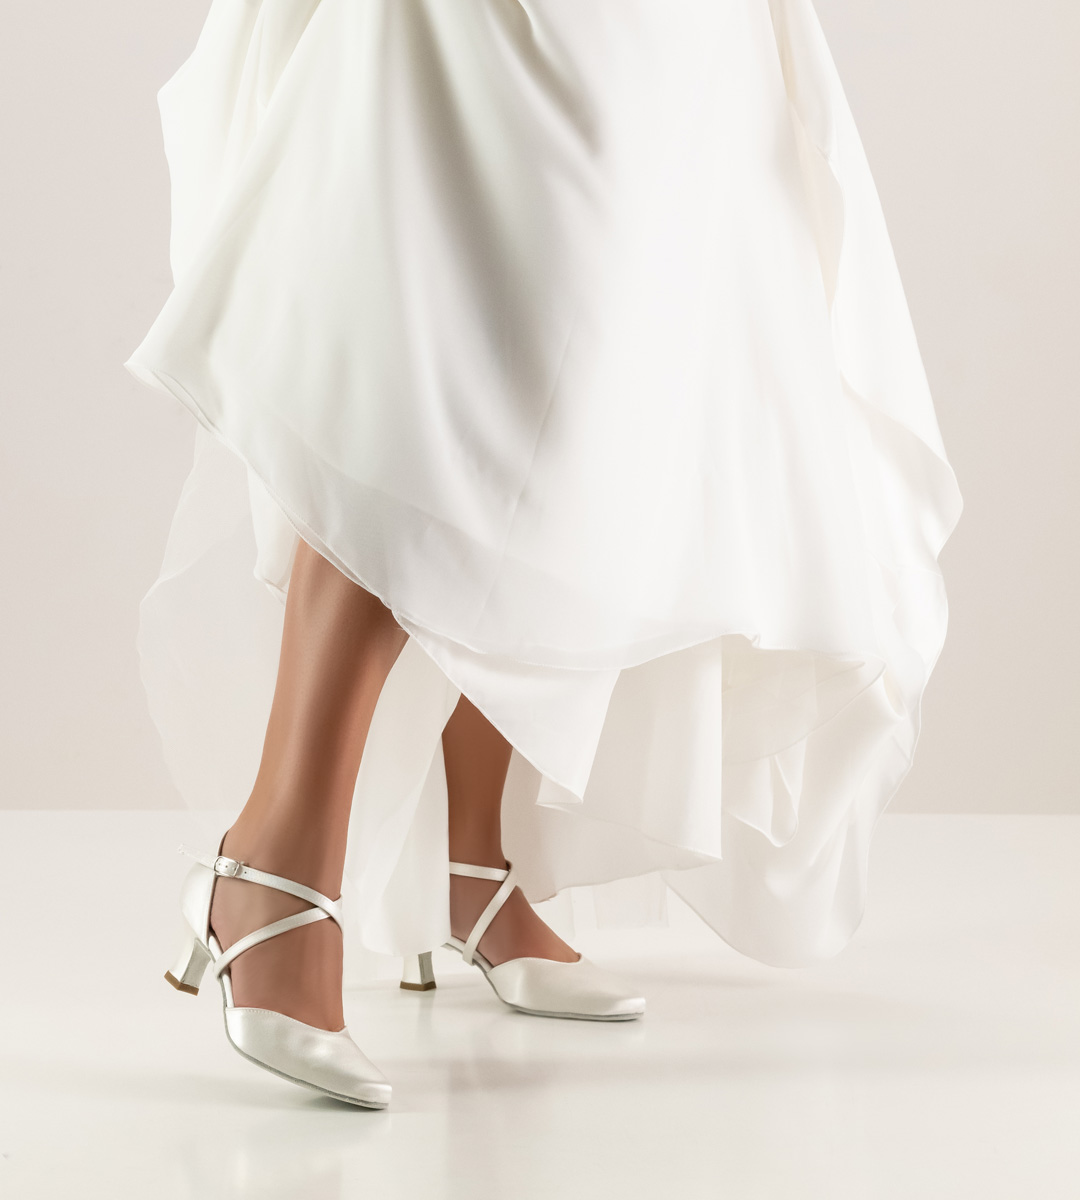 Brautkleid in weiß in Kombiantion mit Brautschuh von Werner Kern